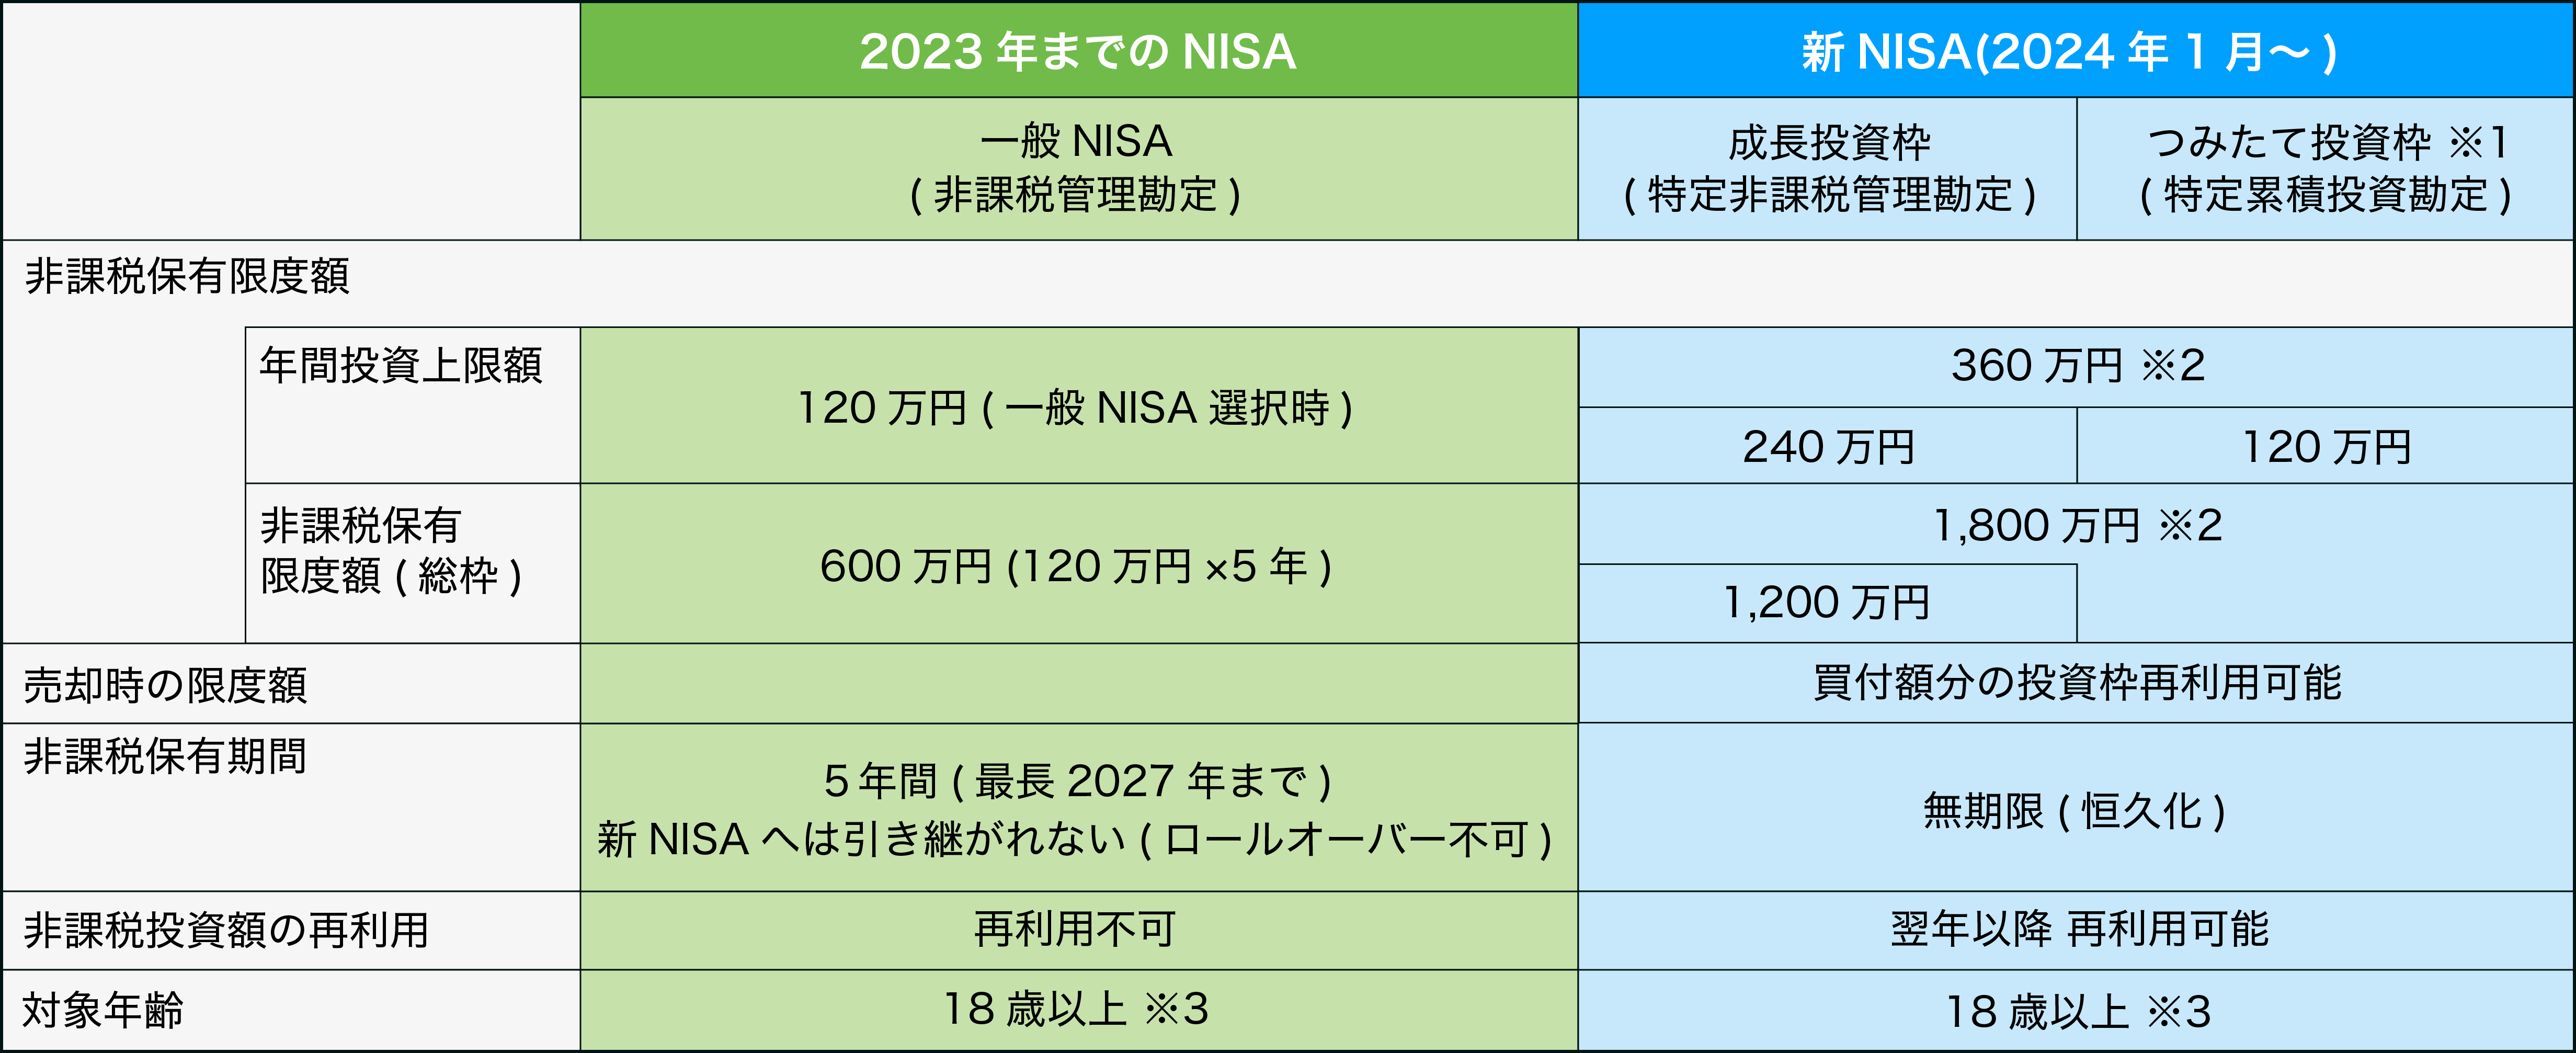 2023年までのNISA制度からの主な変更点